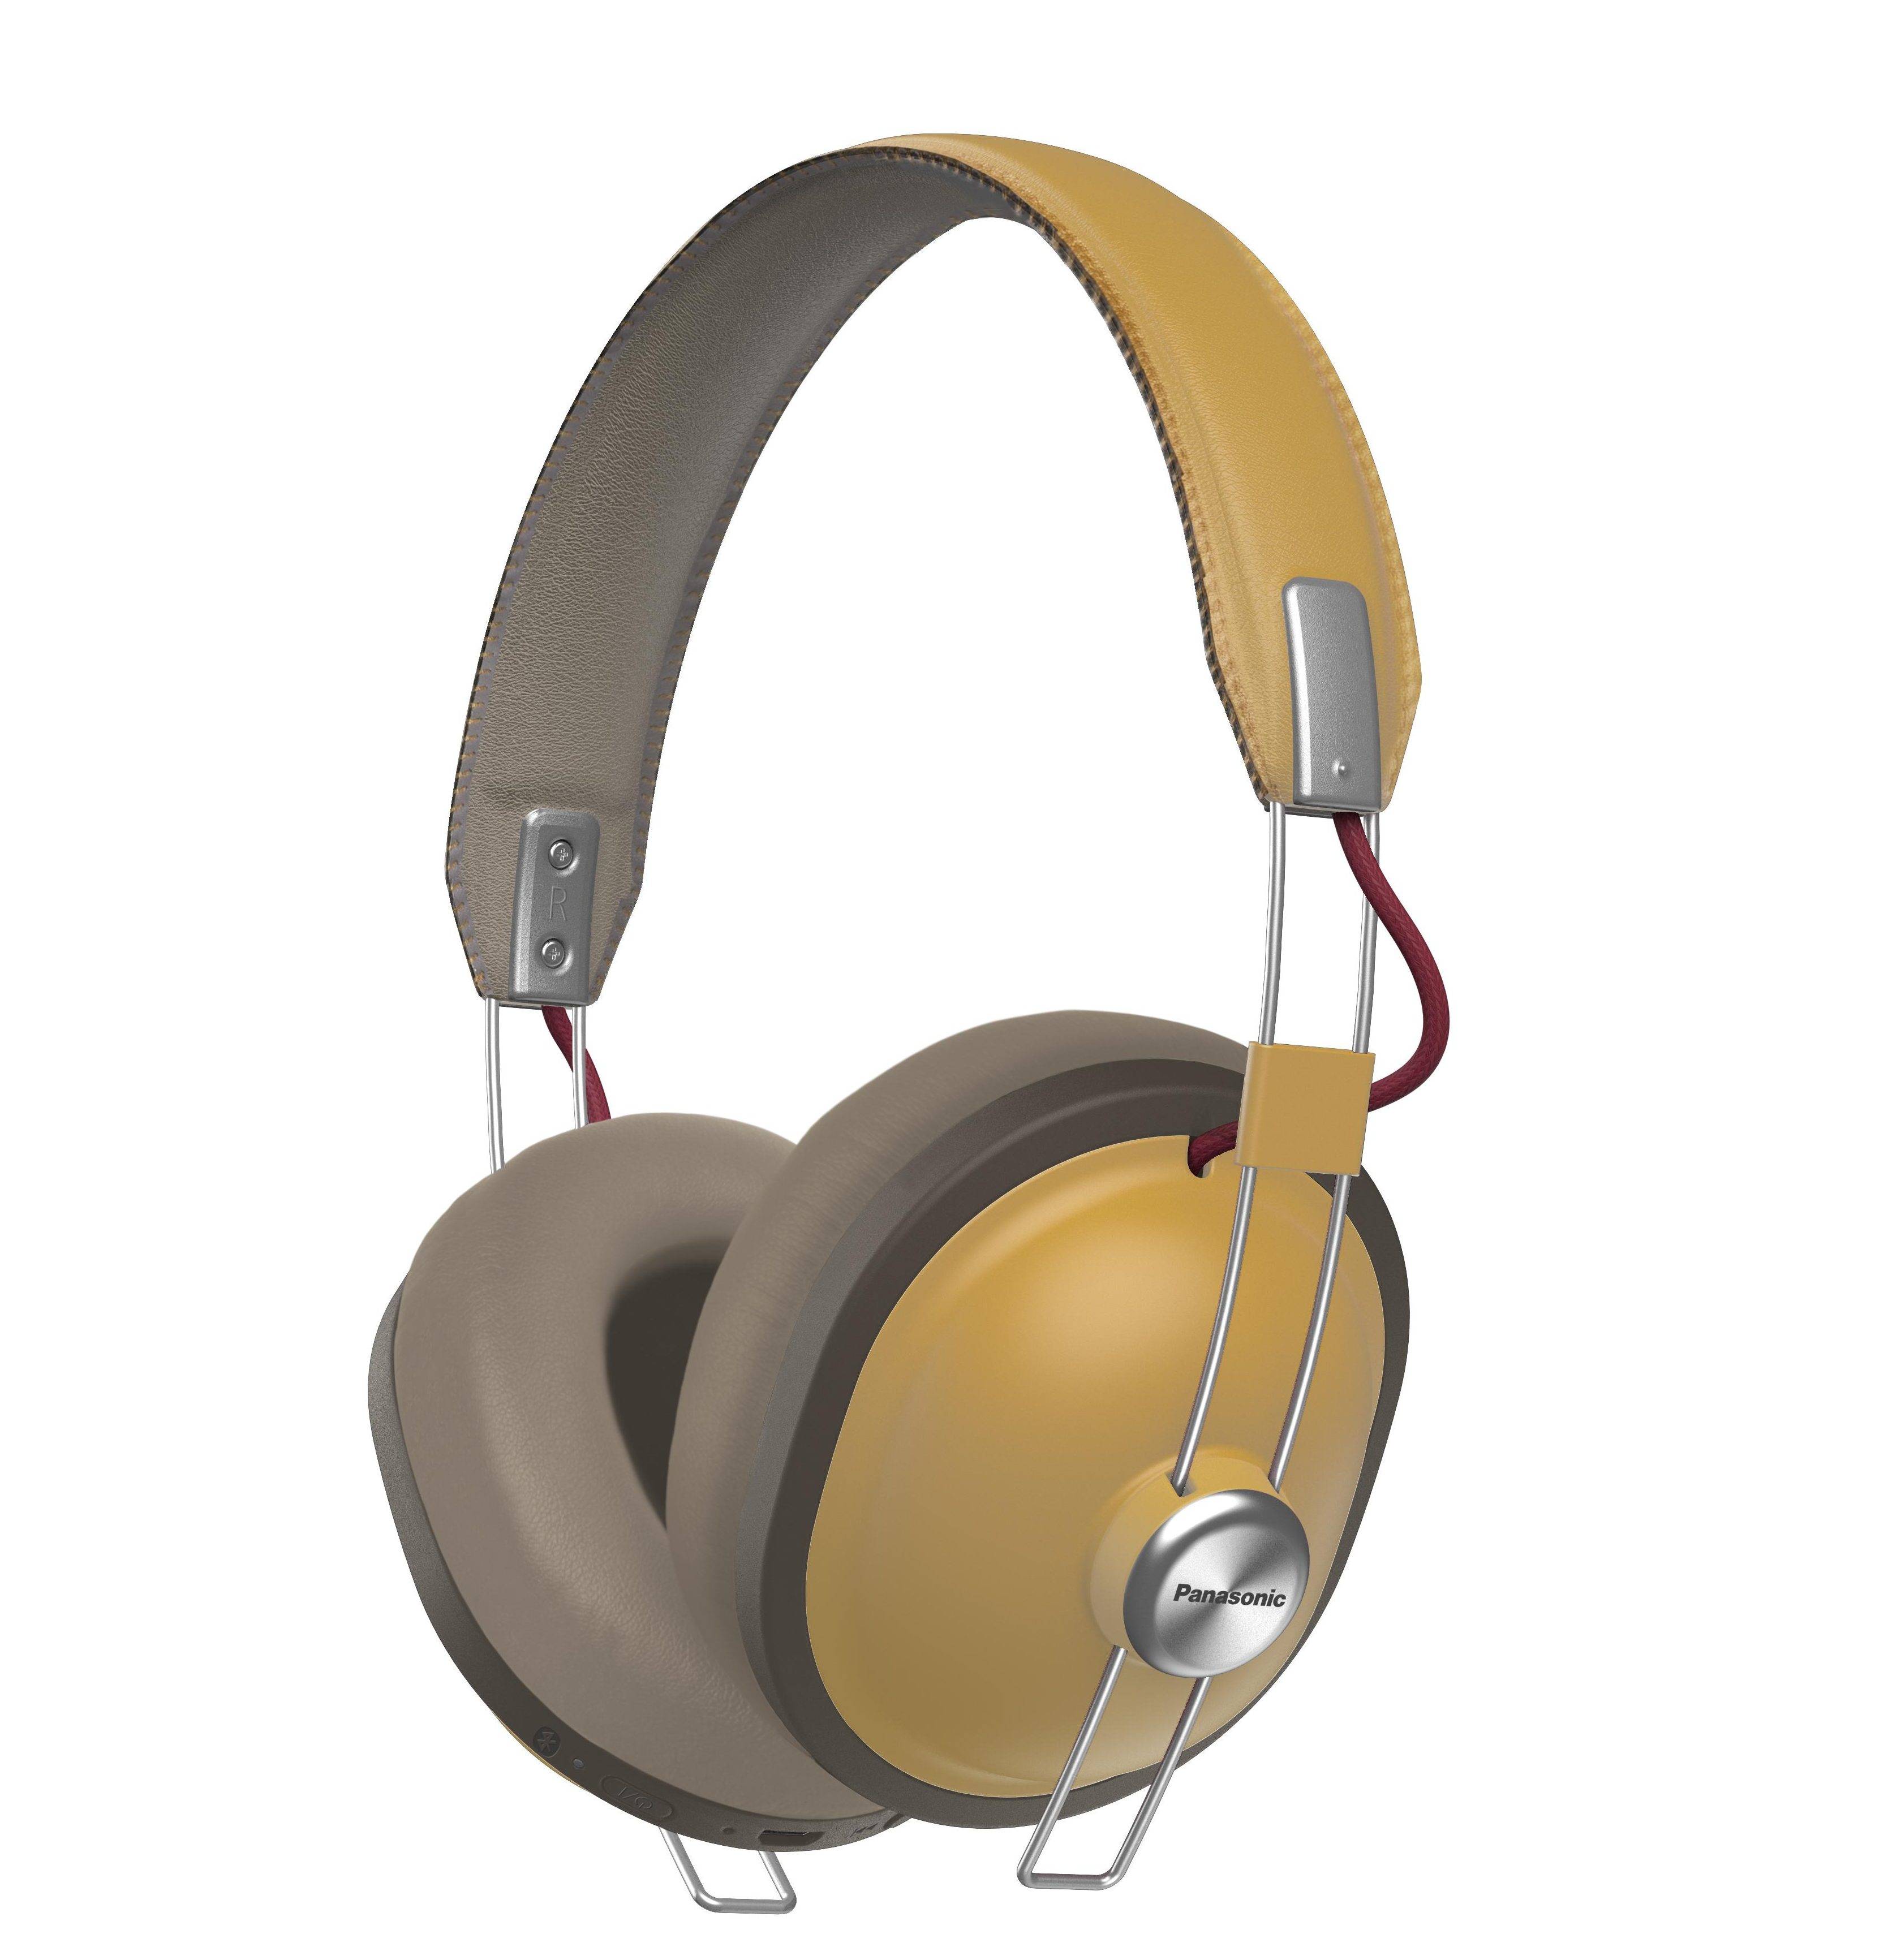 Az új Bluetooth fejhallgató, a RP-HTX80B nagyon kényelmes zenehallgatást és telefonálást tesz lehetővé